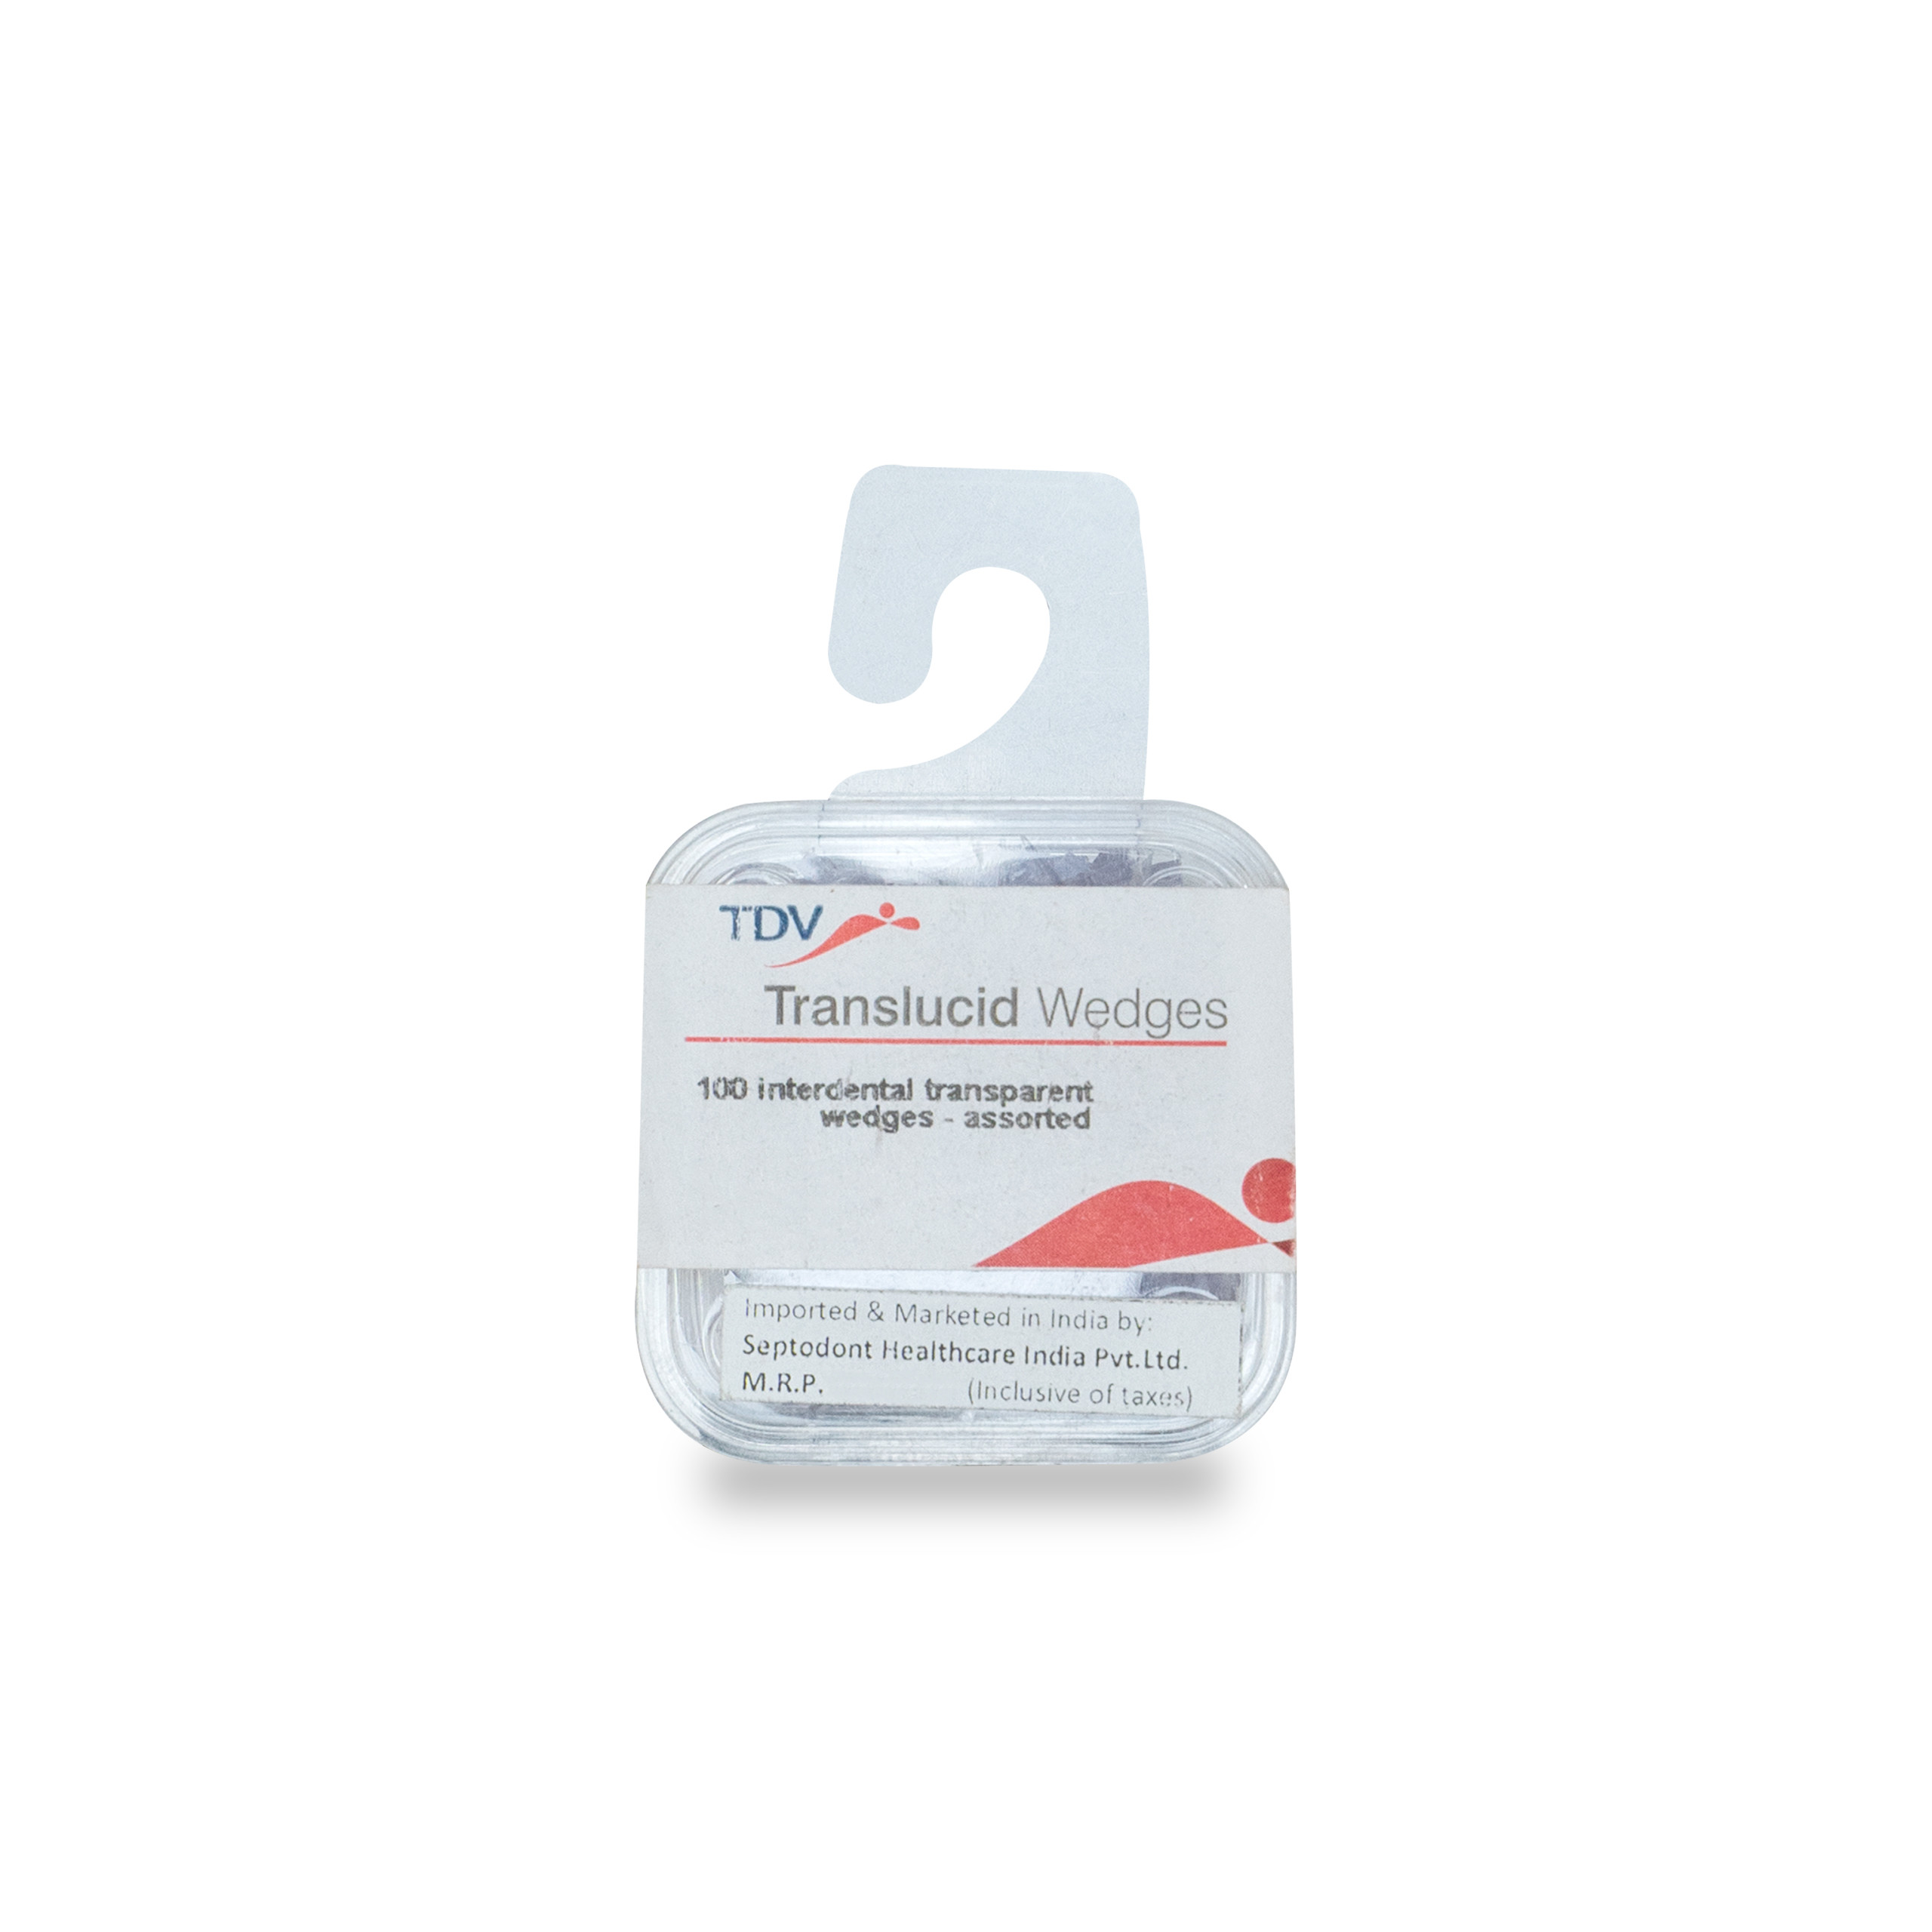 TDV Translucid Wedges 100 Interdental Transparent